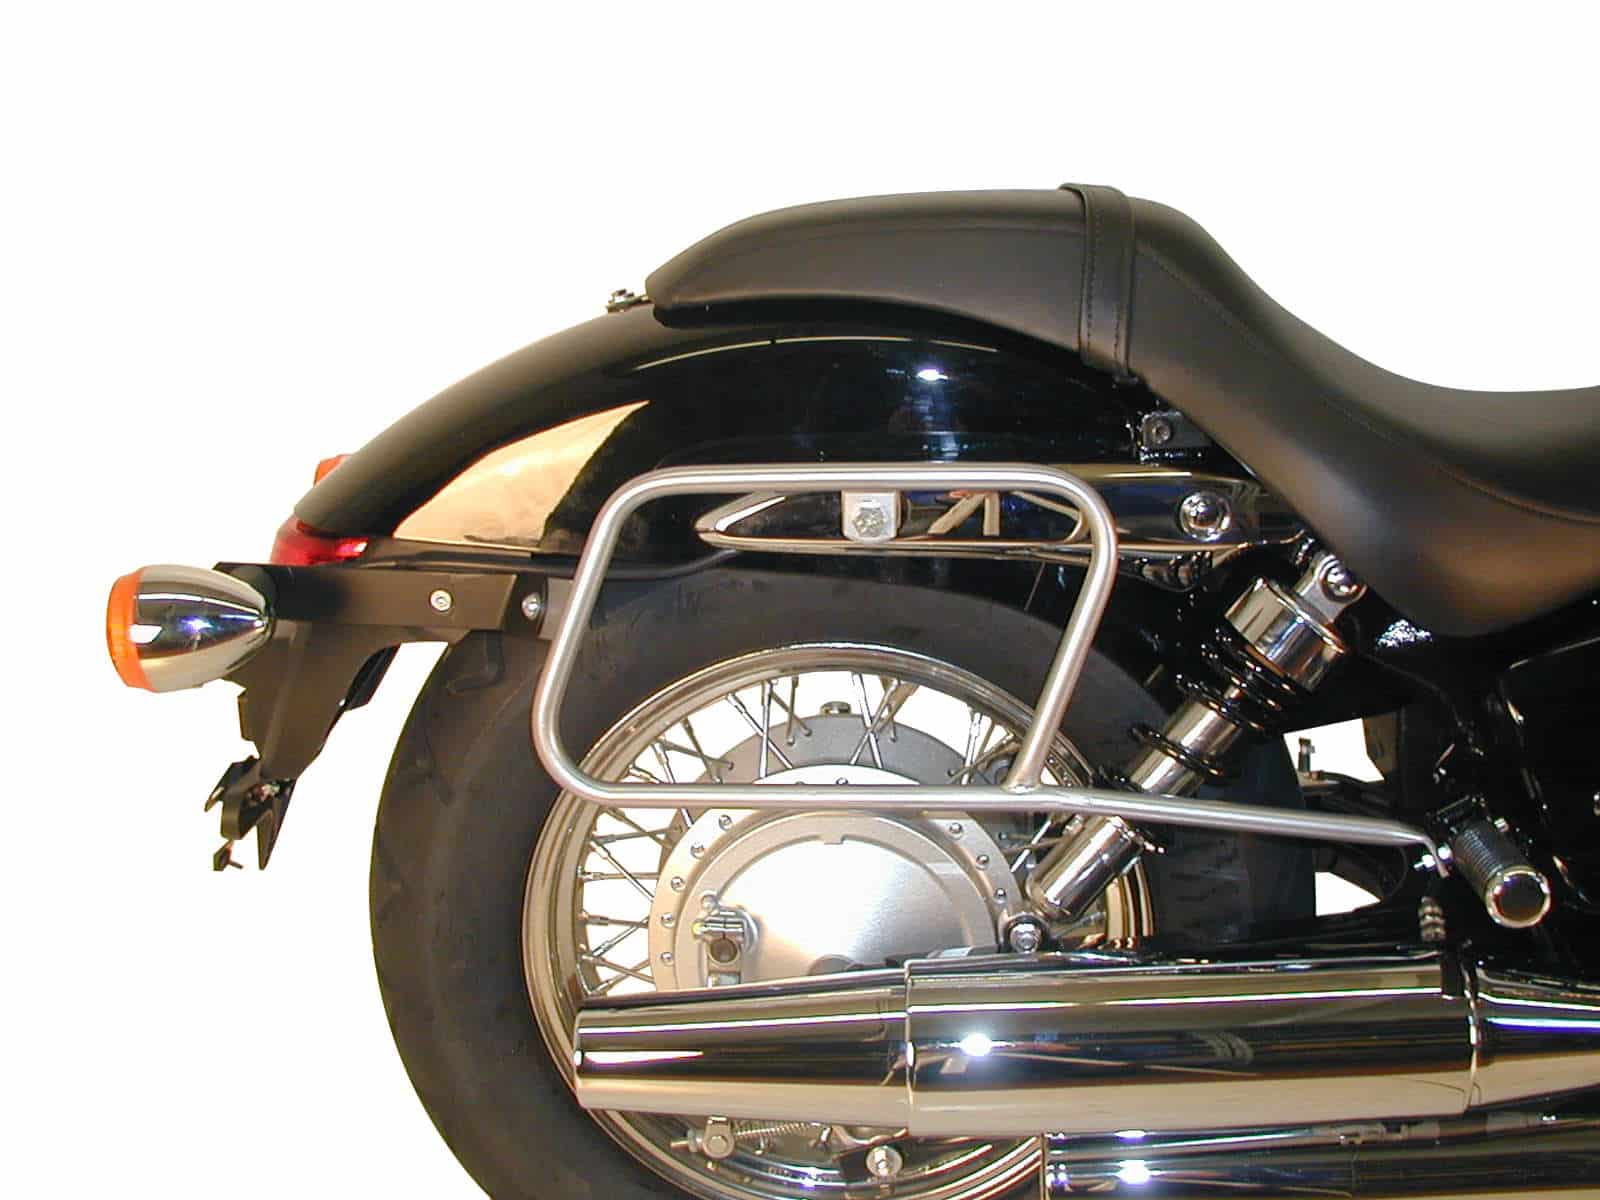 Leather bag holder tube-type - chrome for Honda VT 750 Shadow Spirit (2007-2013)